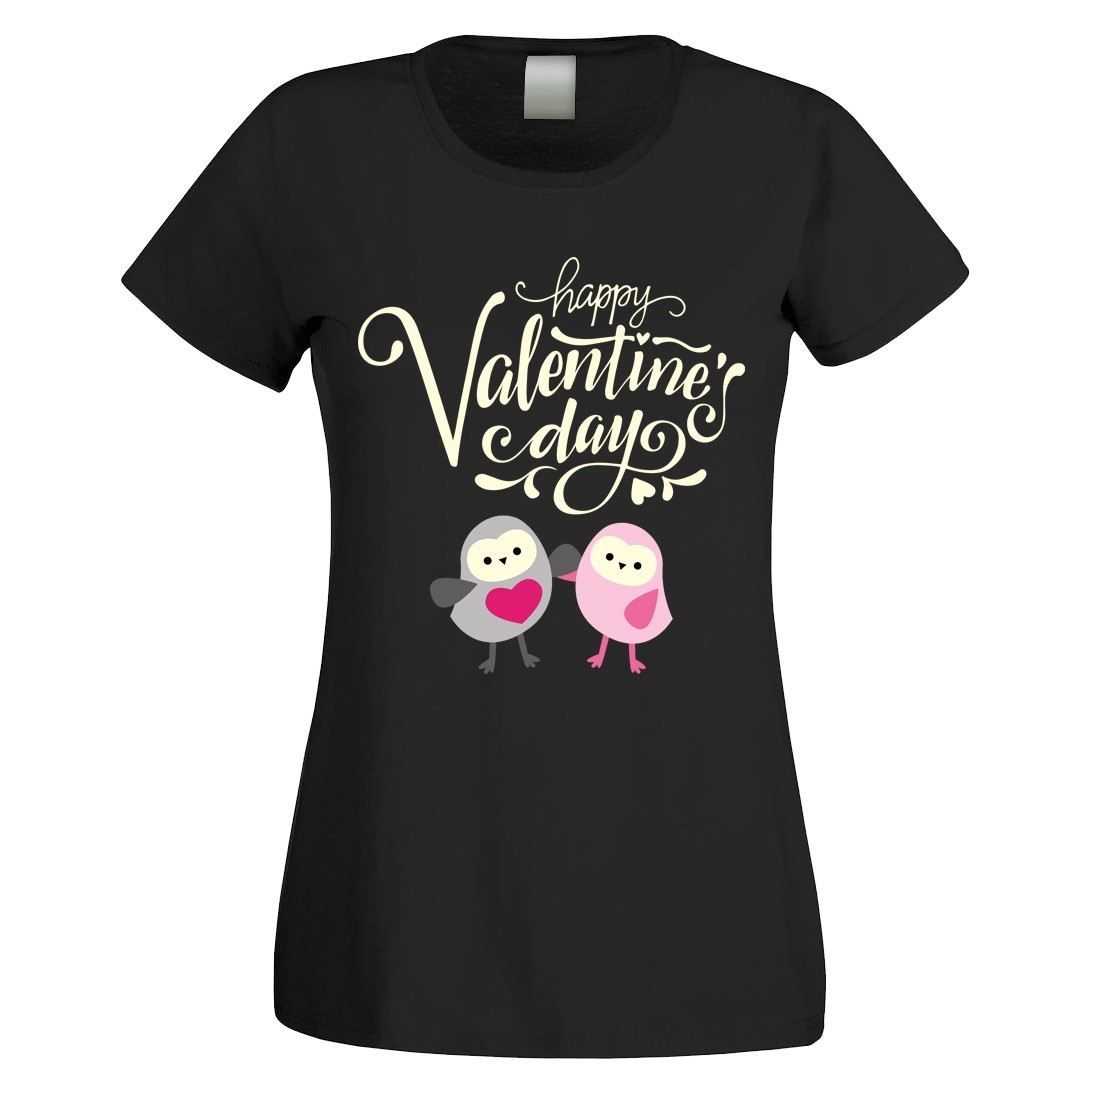 Funshirt weiß oder schwarz, als Tanktop oder Shirt - Happy Valentine’s Day!